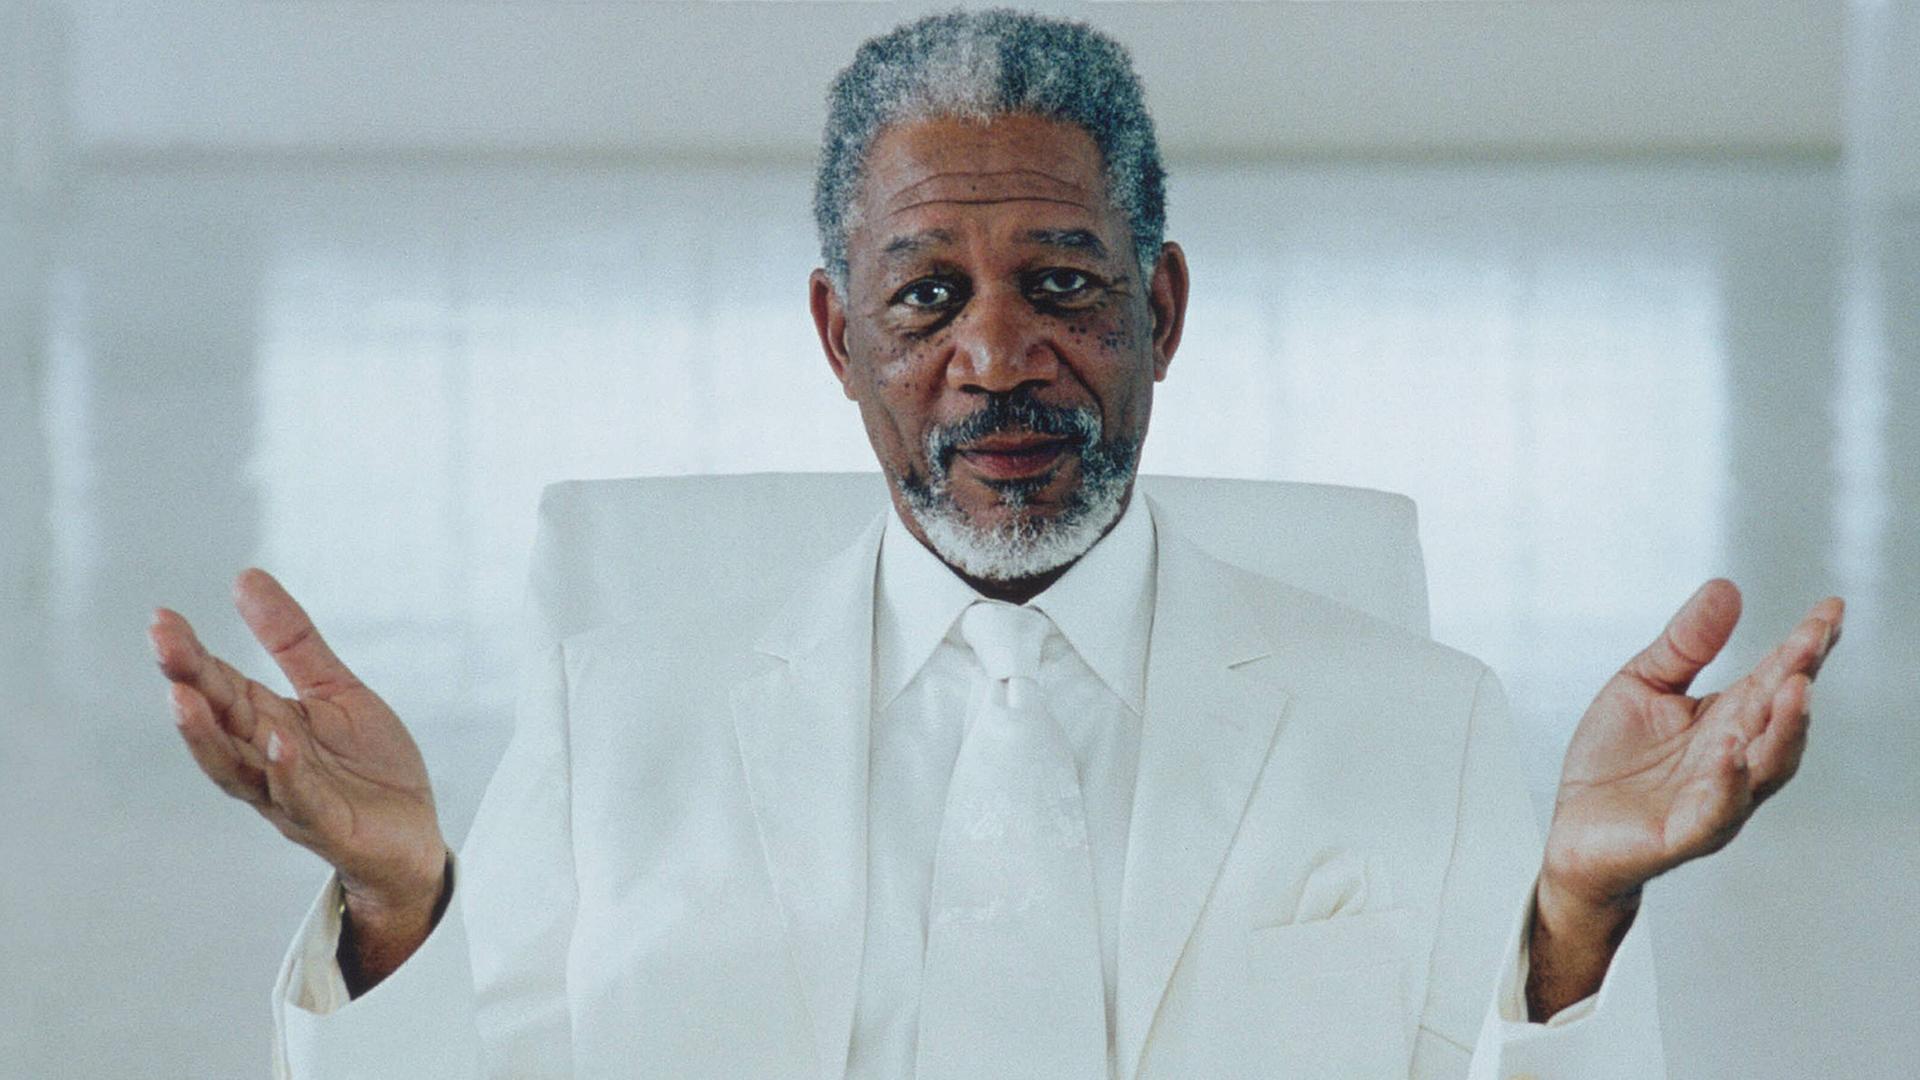 Schauspieler Morgan Freeman in seiner Rolle als Gott in dem Film "Bruce Allmächtig".